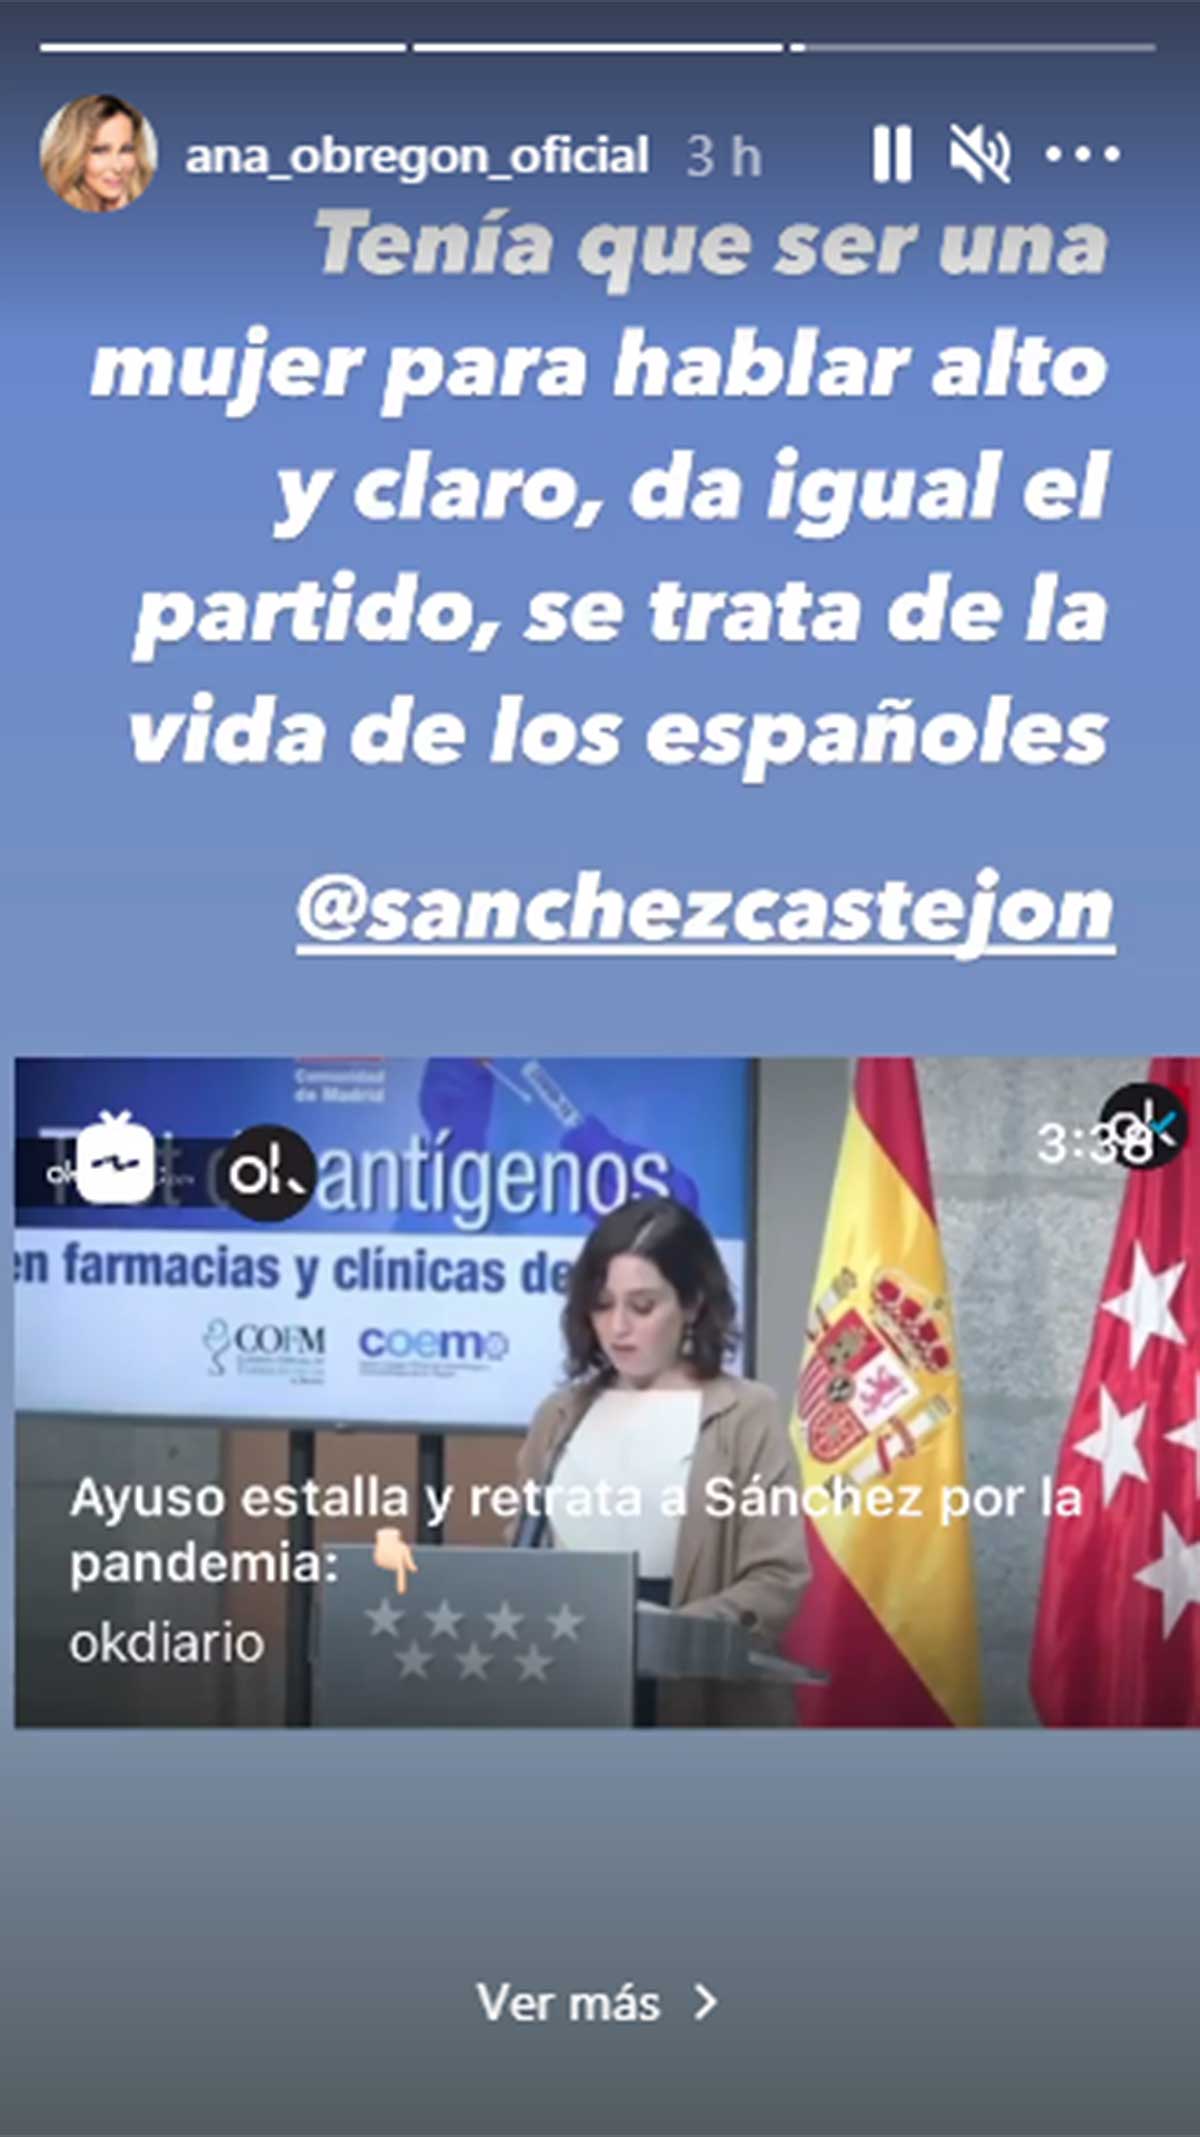 El ataque de Isabel Díaz Ayuso a Pedro Sánchez que Ana Obregón aplaude: "Tenía que ser una mujer la que hablase alto y claro"